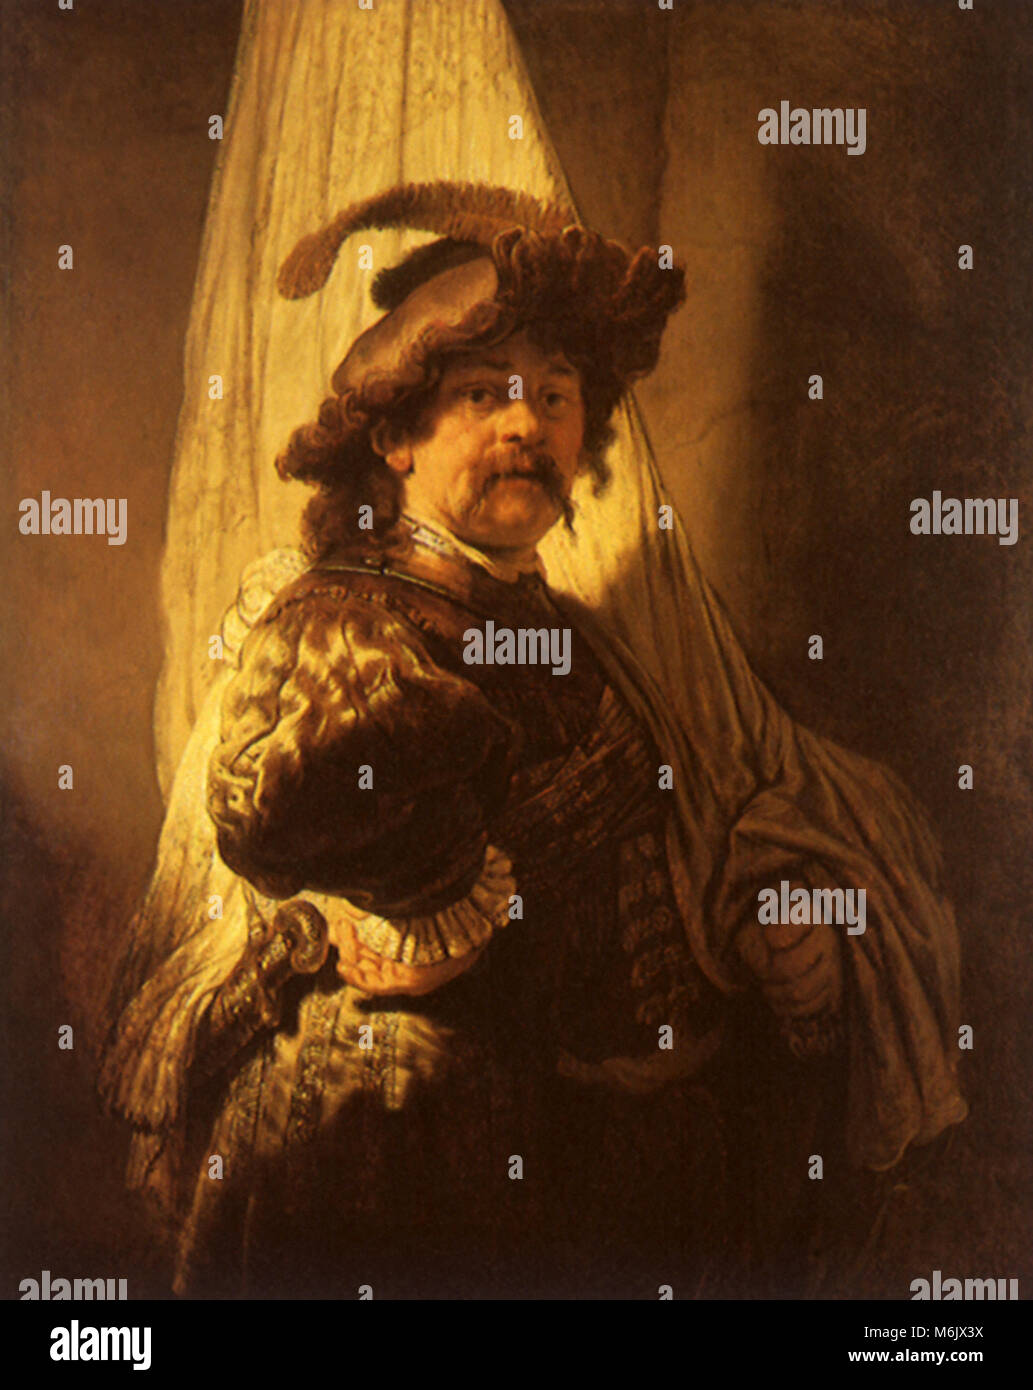 Die Standard-Bearer, Rembrandt, Harmensz van Rijn, 1636. Stockfoto